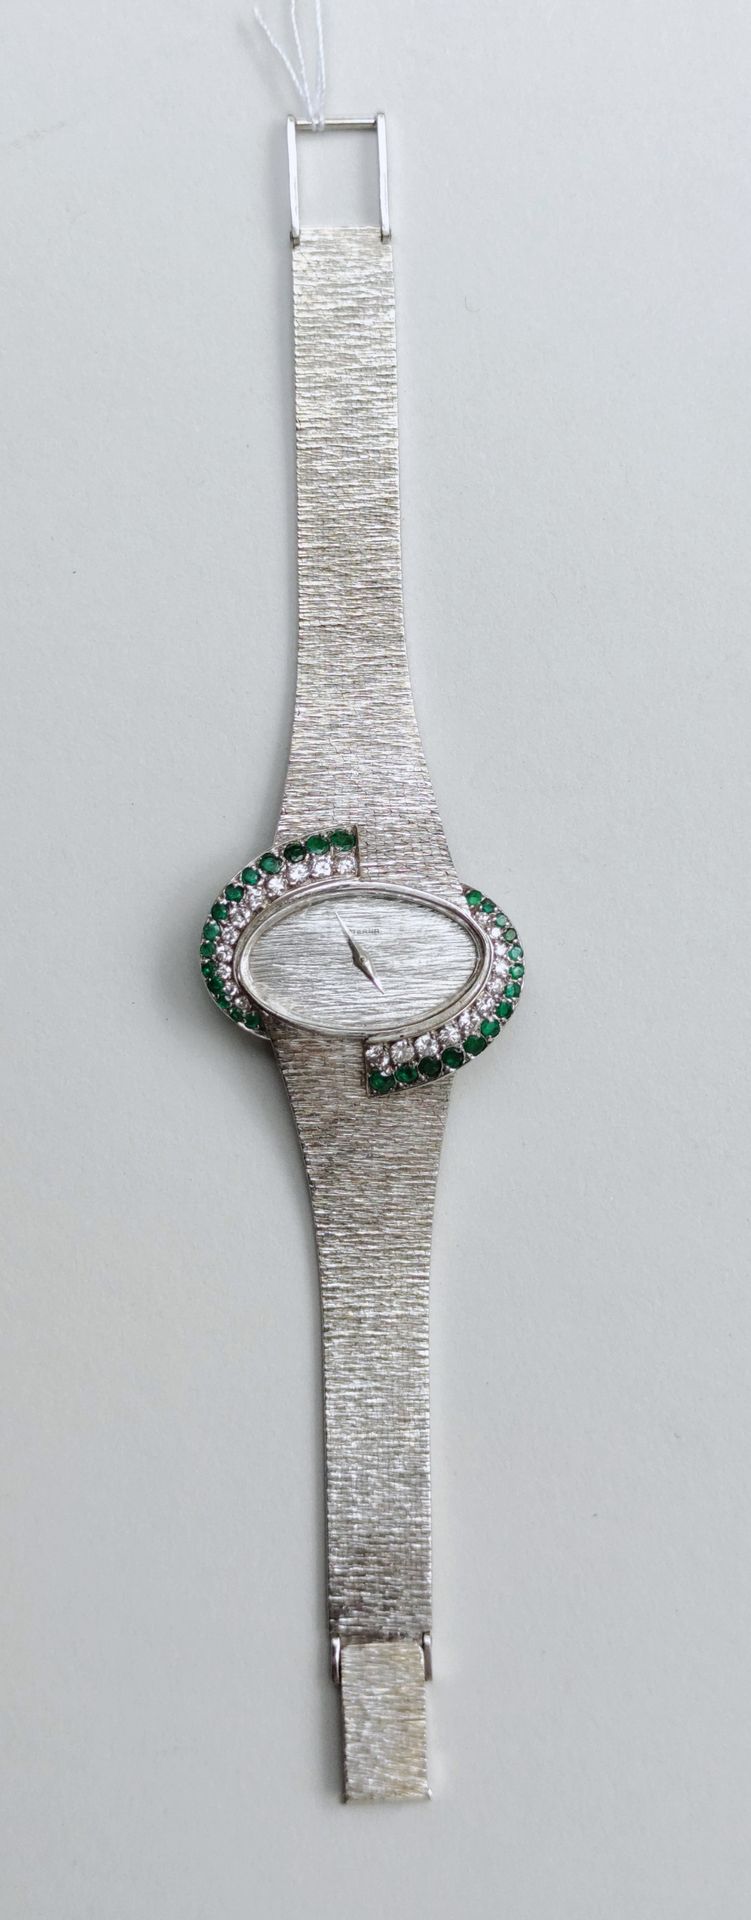 Null 
ETERNA品牌750°/00白金女士腕表
椭圆形表圈镶嵌钻石和绿宝石
毛重：47.8克（机芯有待修订，不保证）。